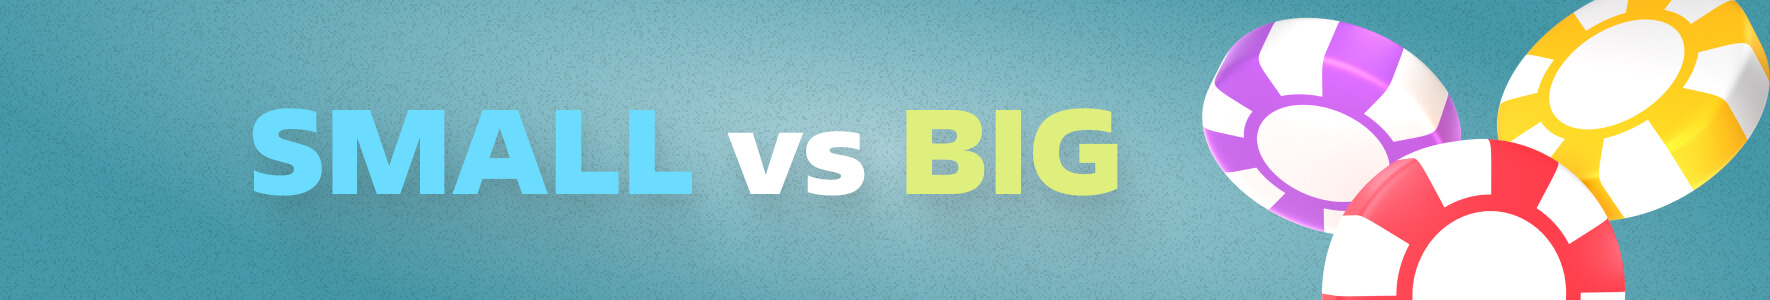 Small VS Big: подробное сравнение